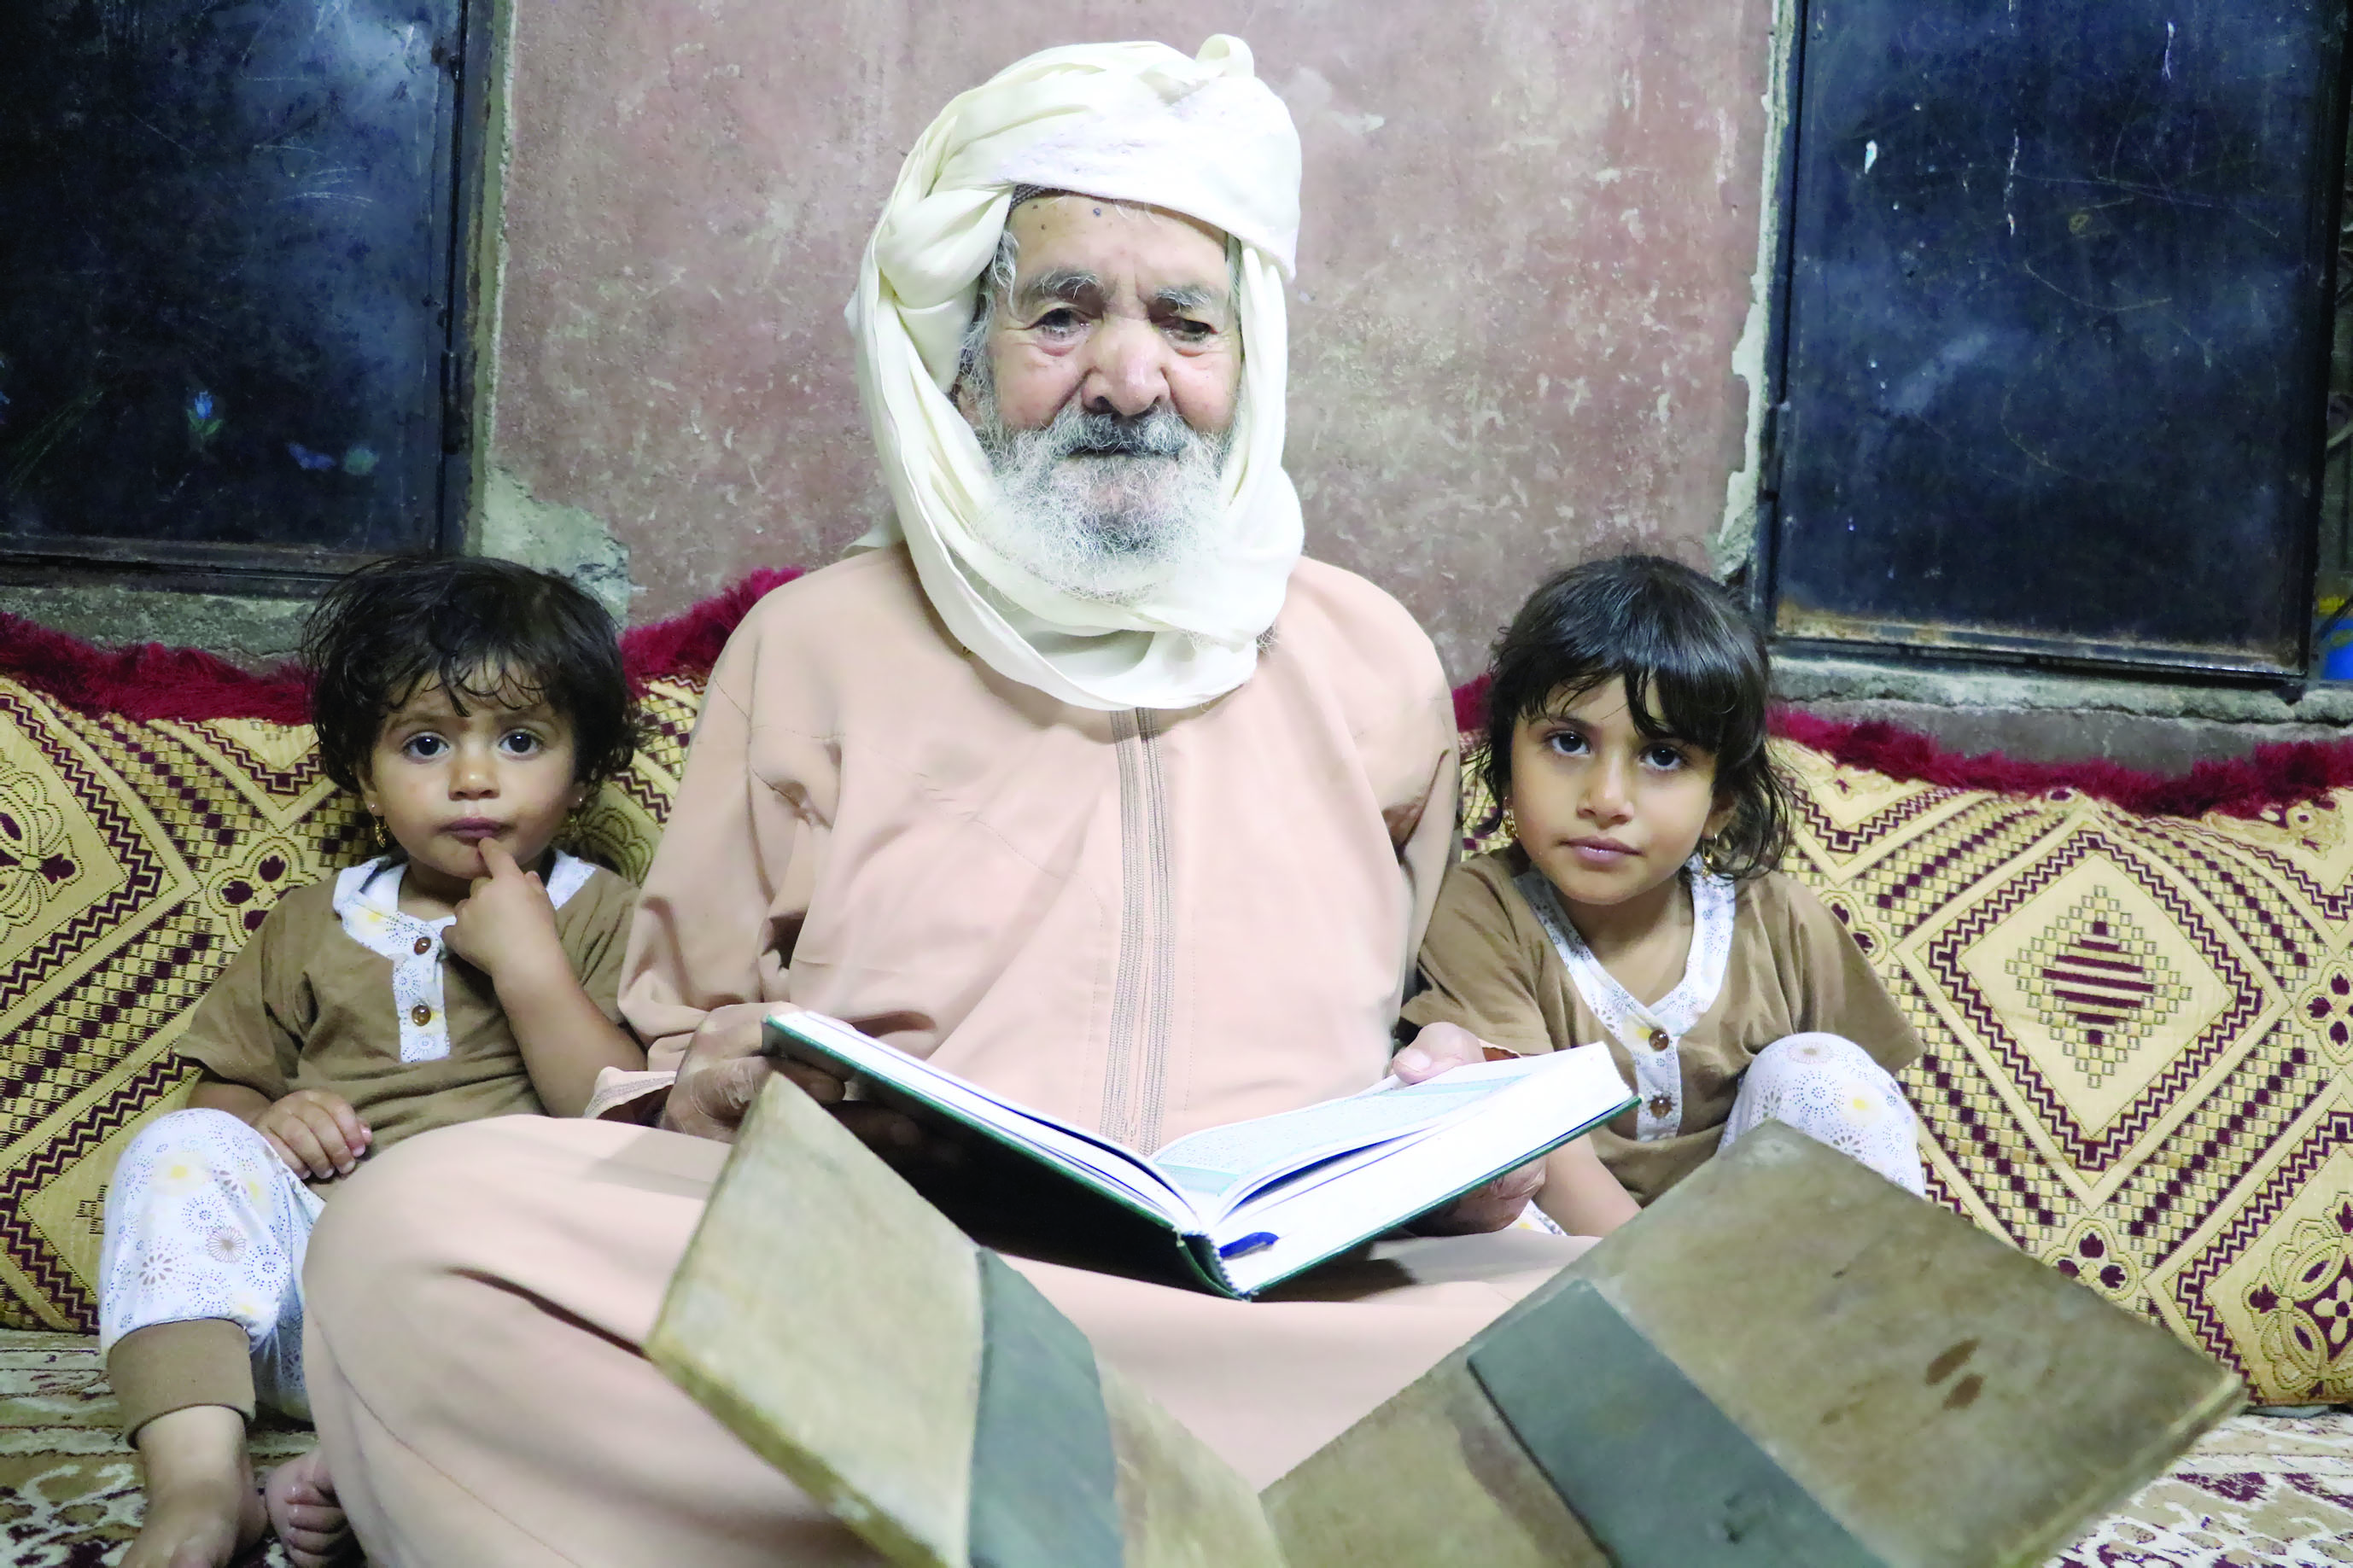 غريب الزكواني البالغ من العمر 88 عامًا :
هكذا حفظت القرآن الكريم